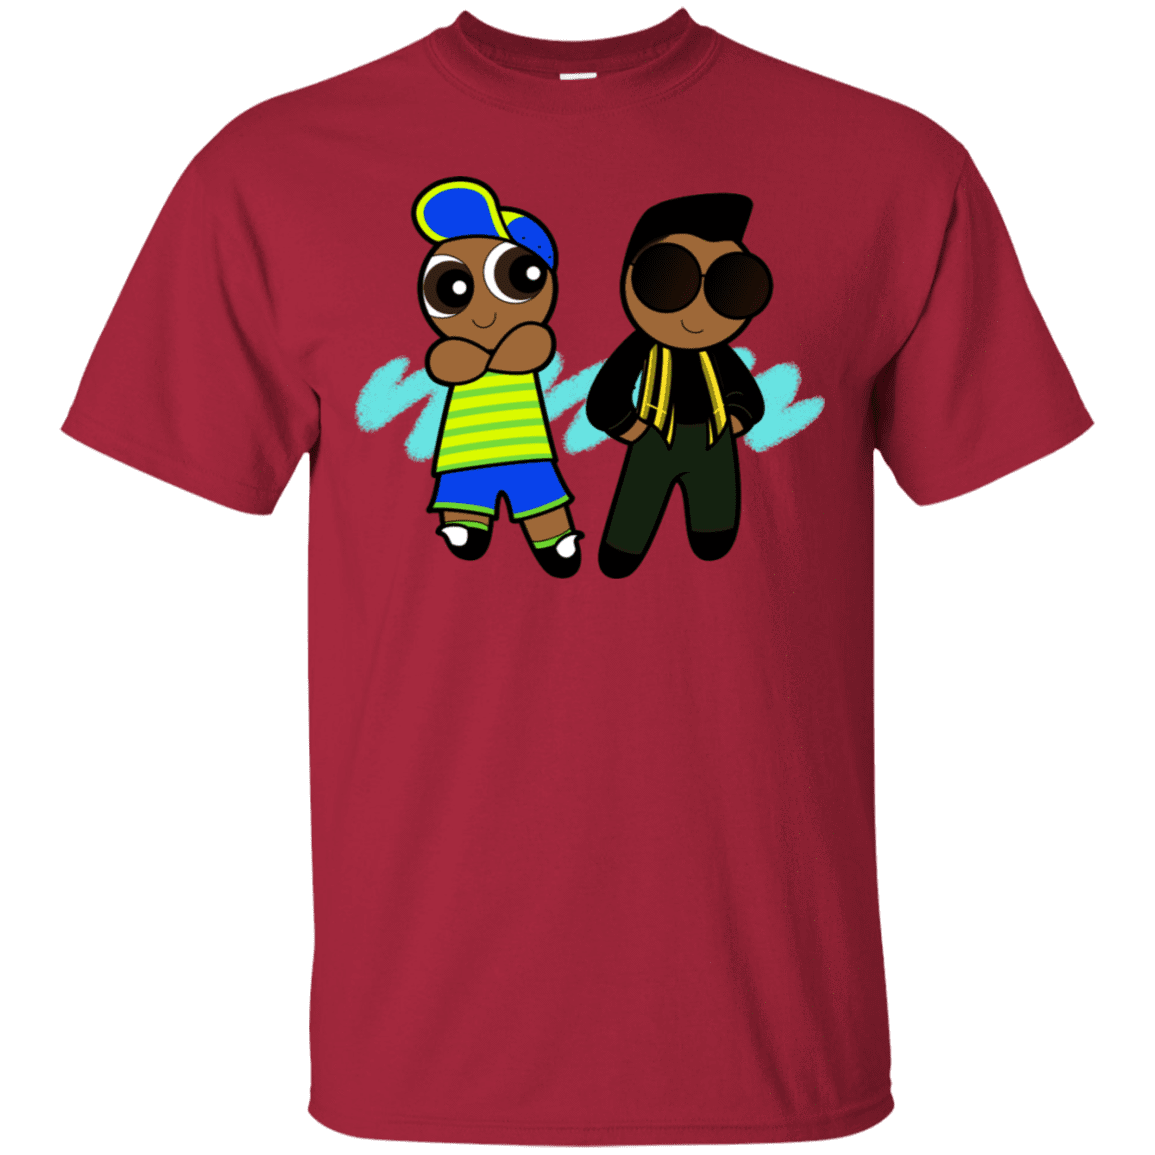 T-Shirts Cardinal / S Puff Prince T-Shirt